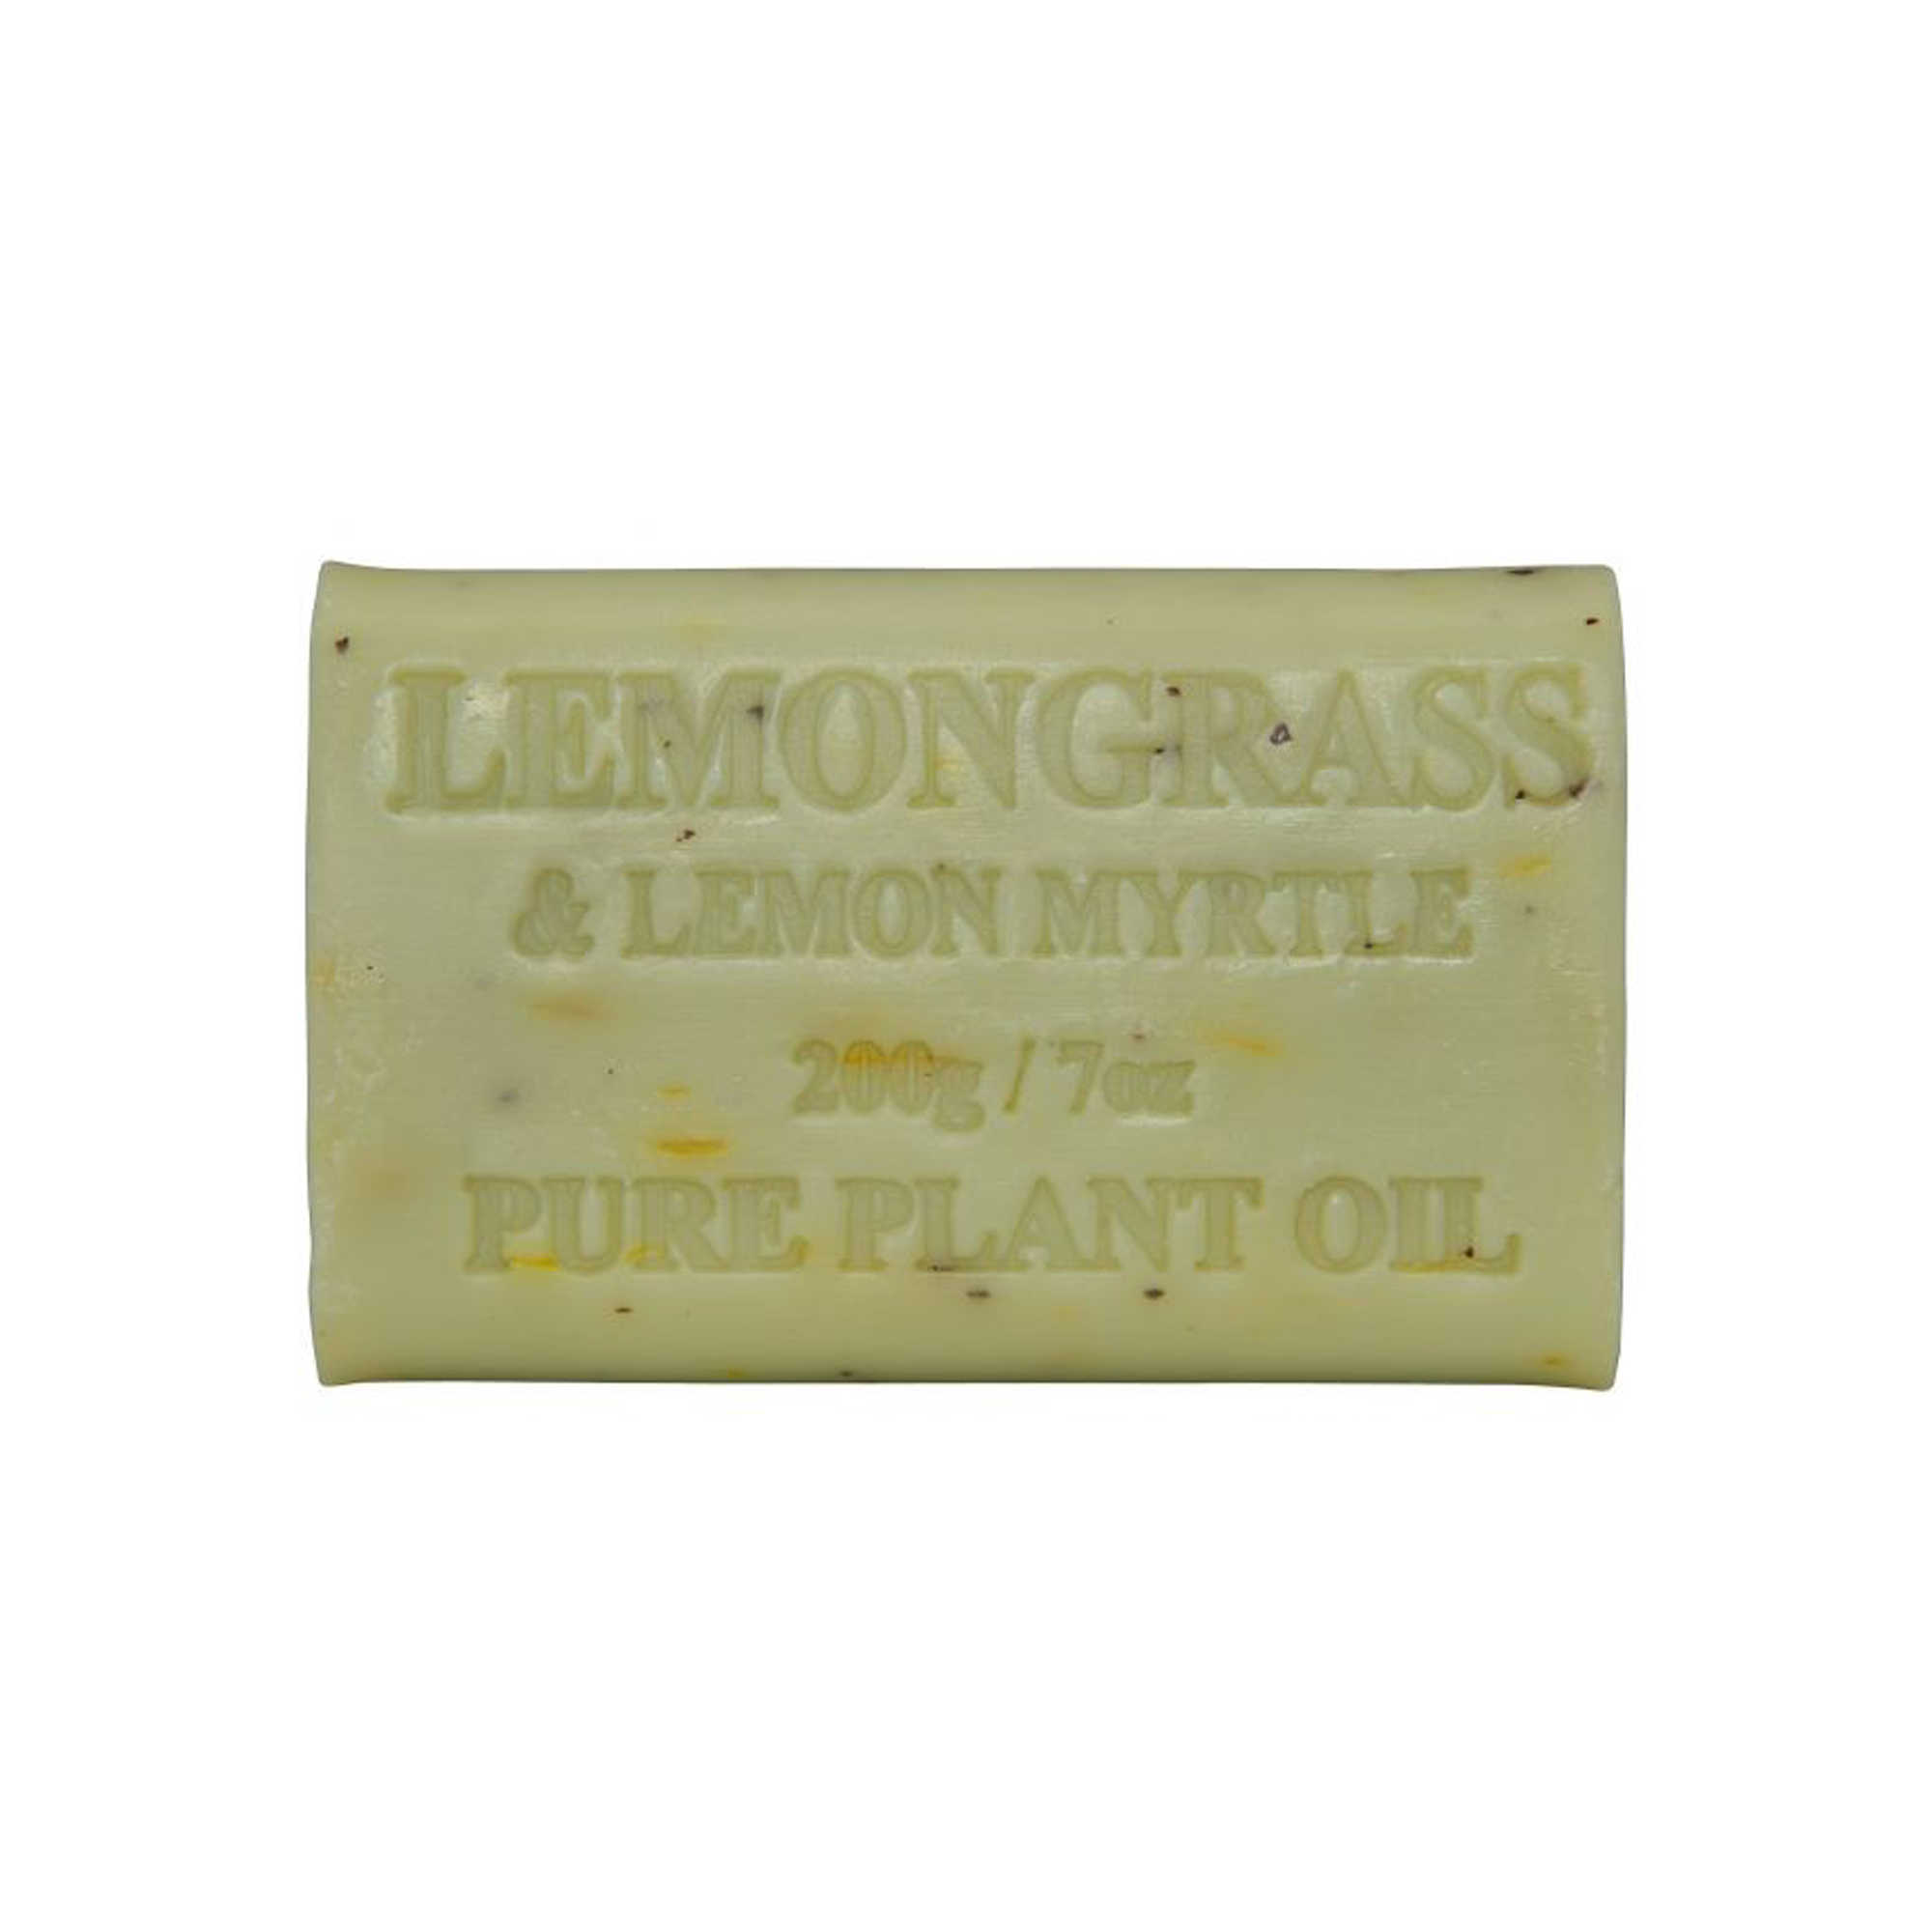 200g Lemongrass and Lemon Myrtle Soap x65 Carton